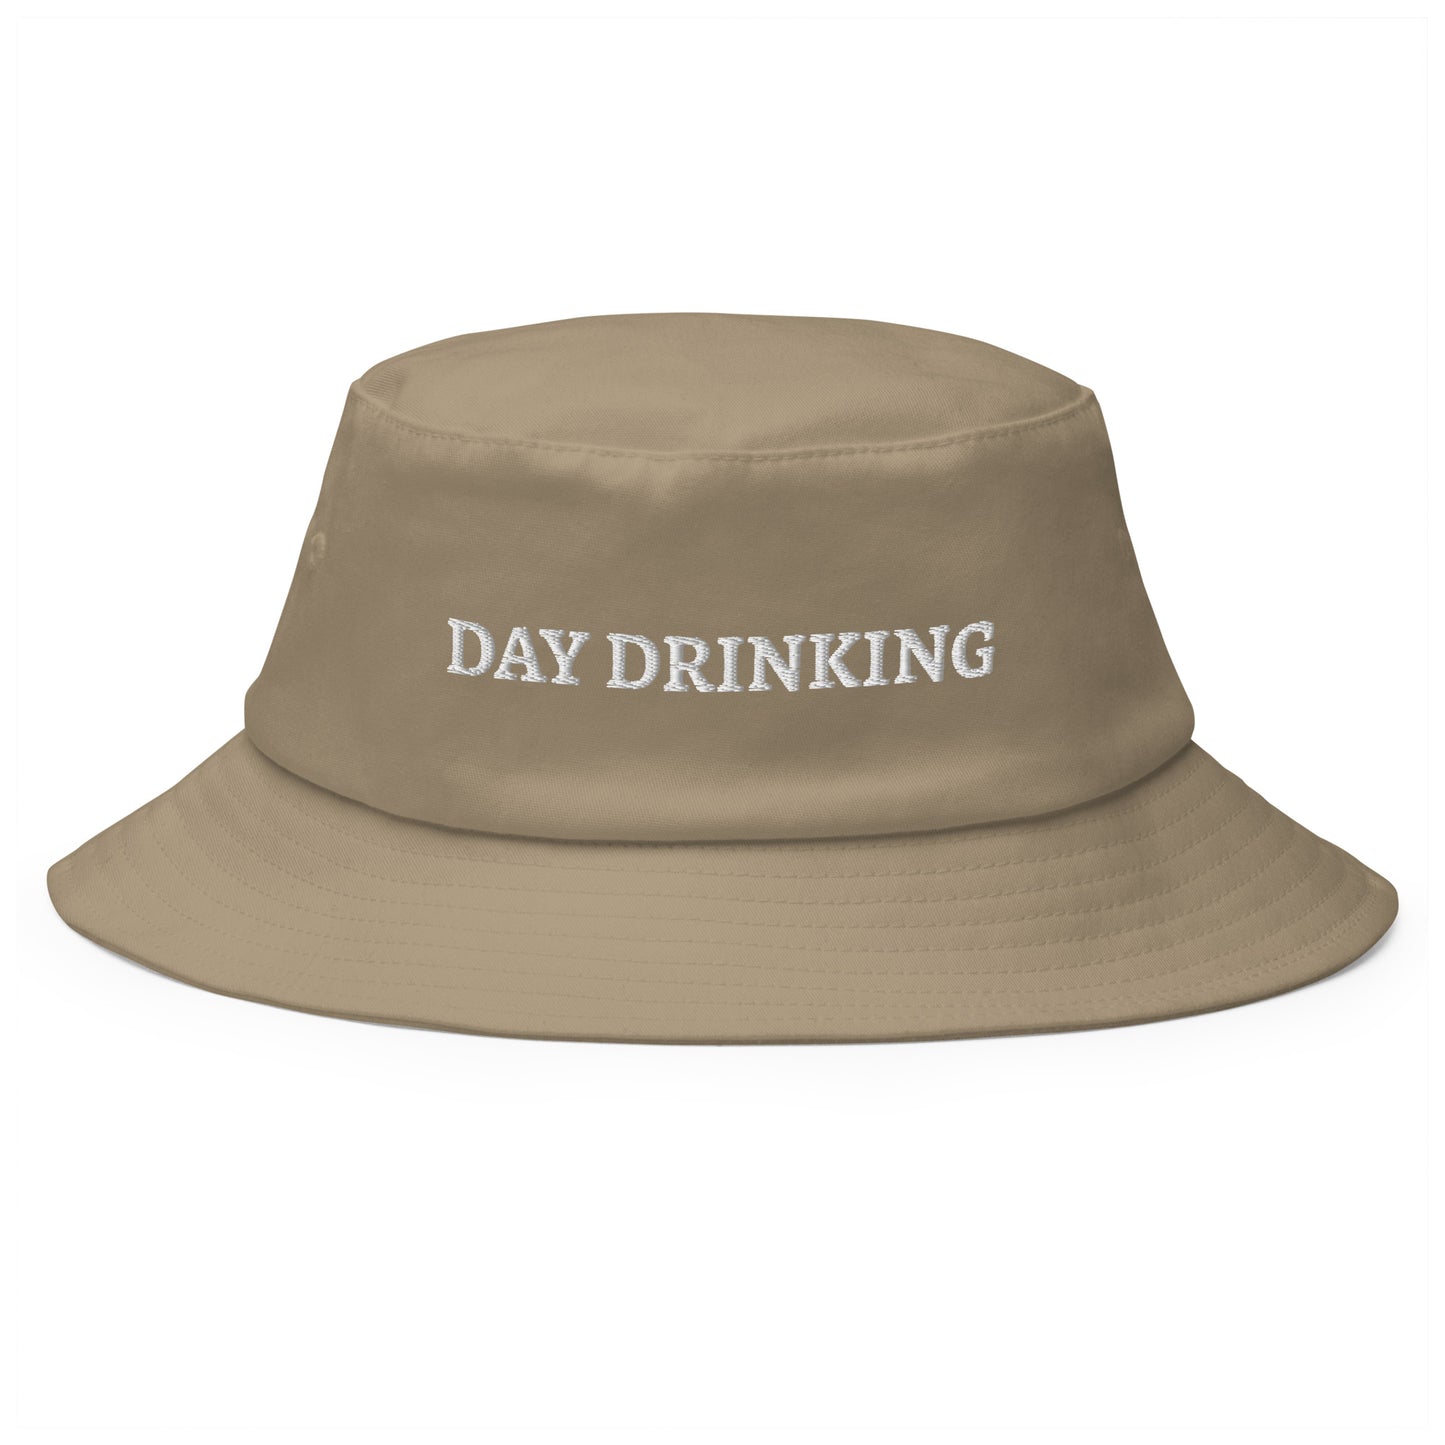 "DAY DRINKING" bestickter Fischerhut auf weißem Hintergrund.